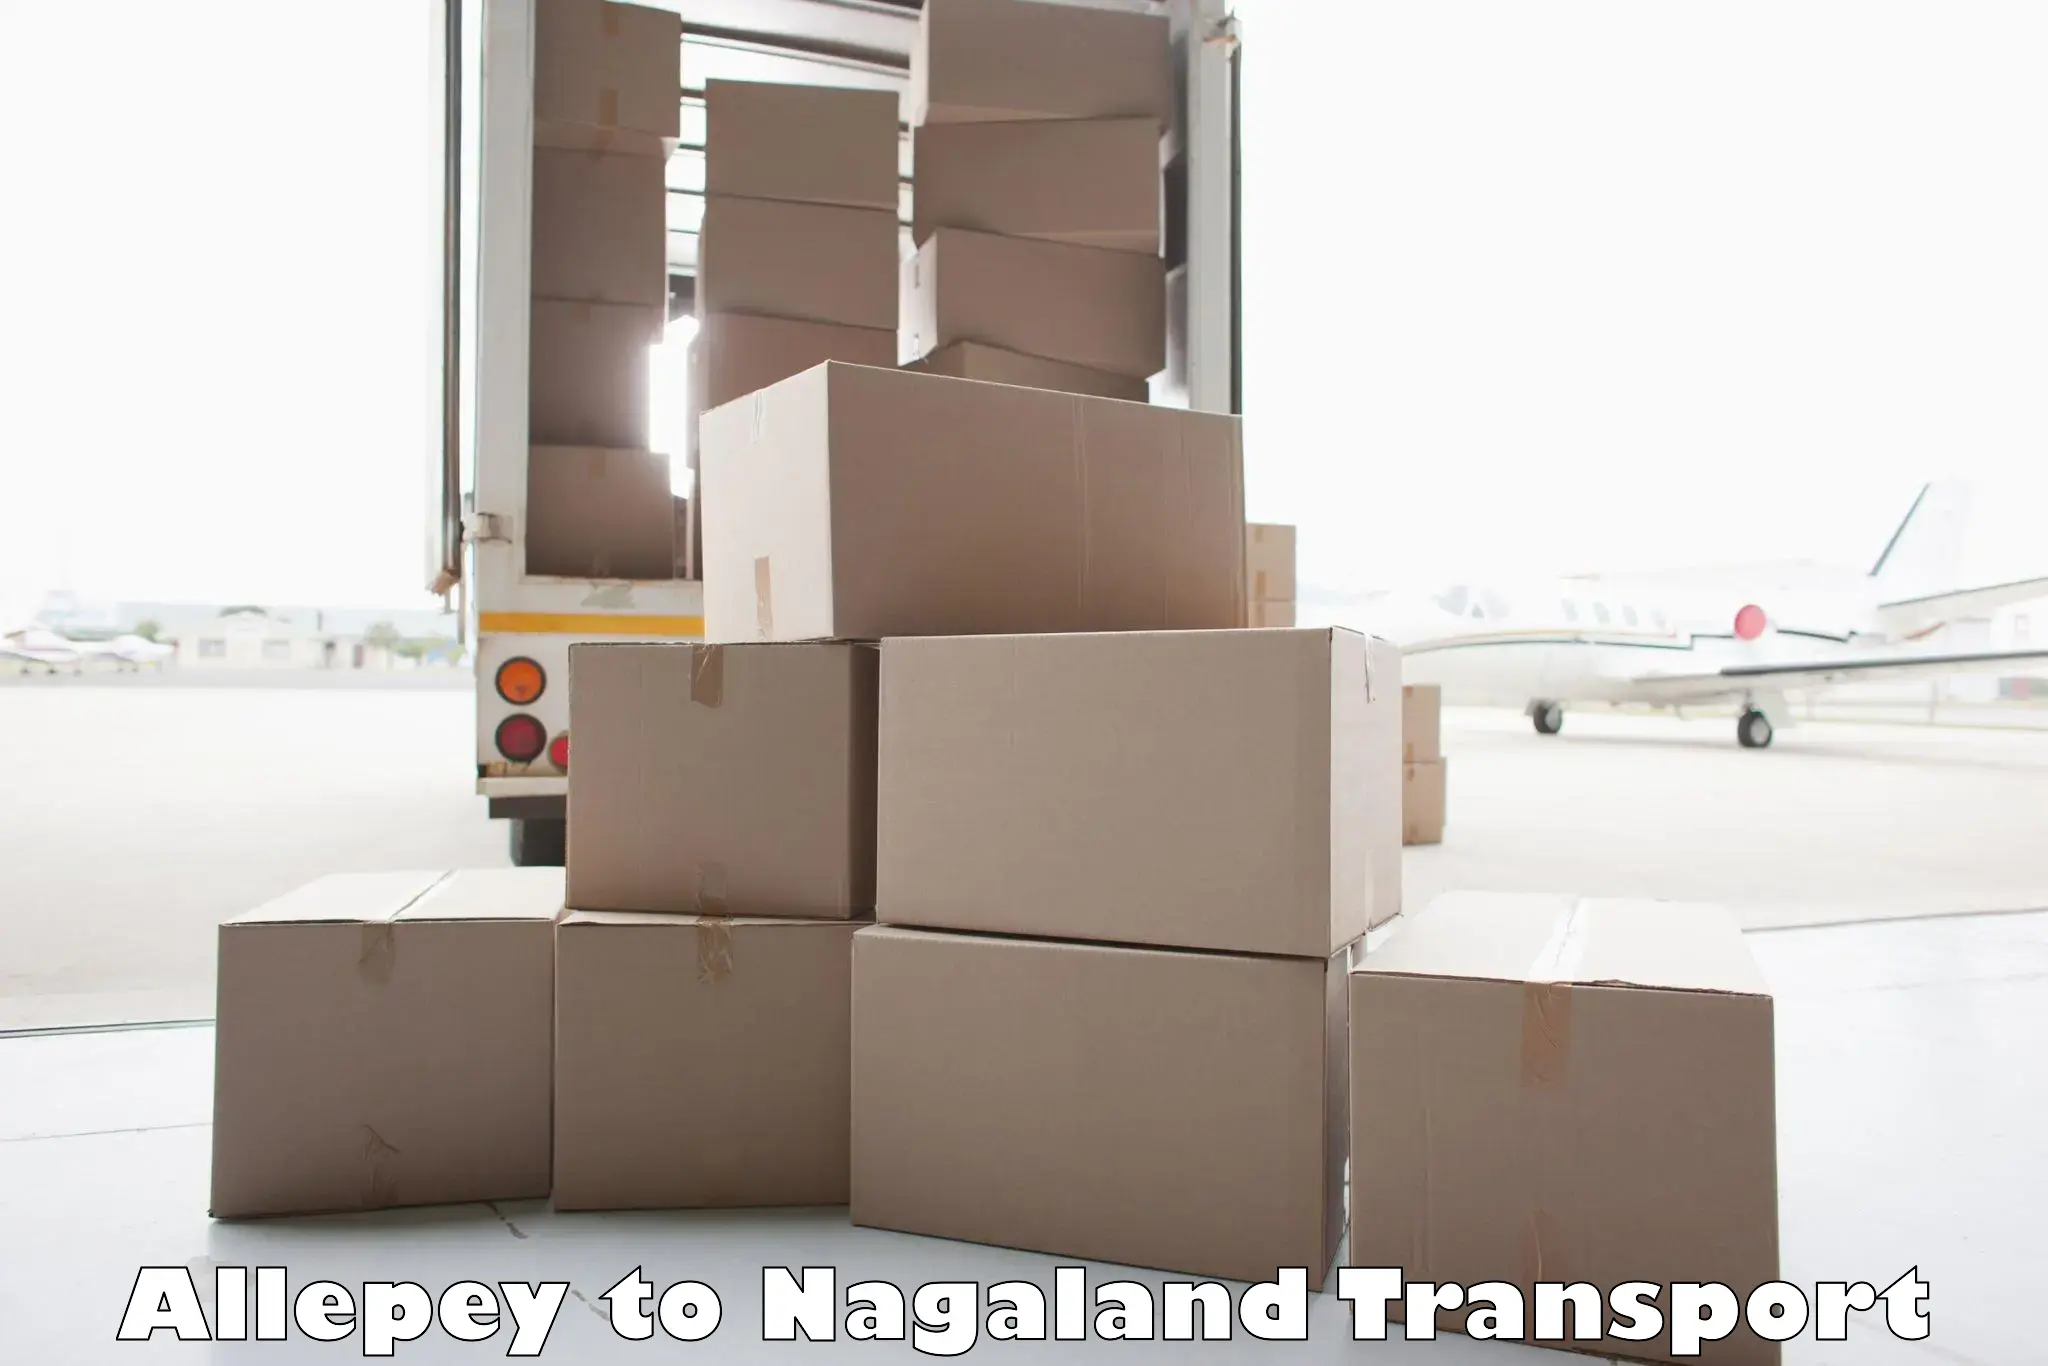 Online transport service Allepey to Nagaland